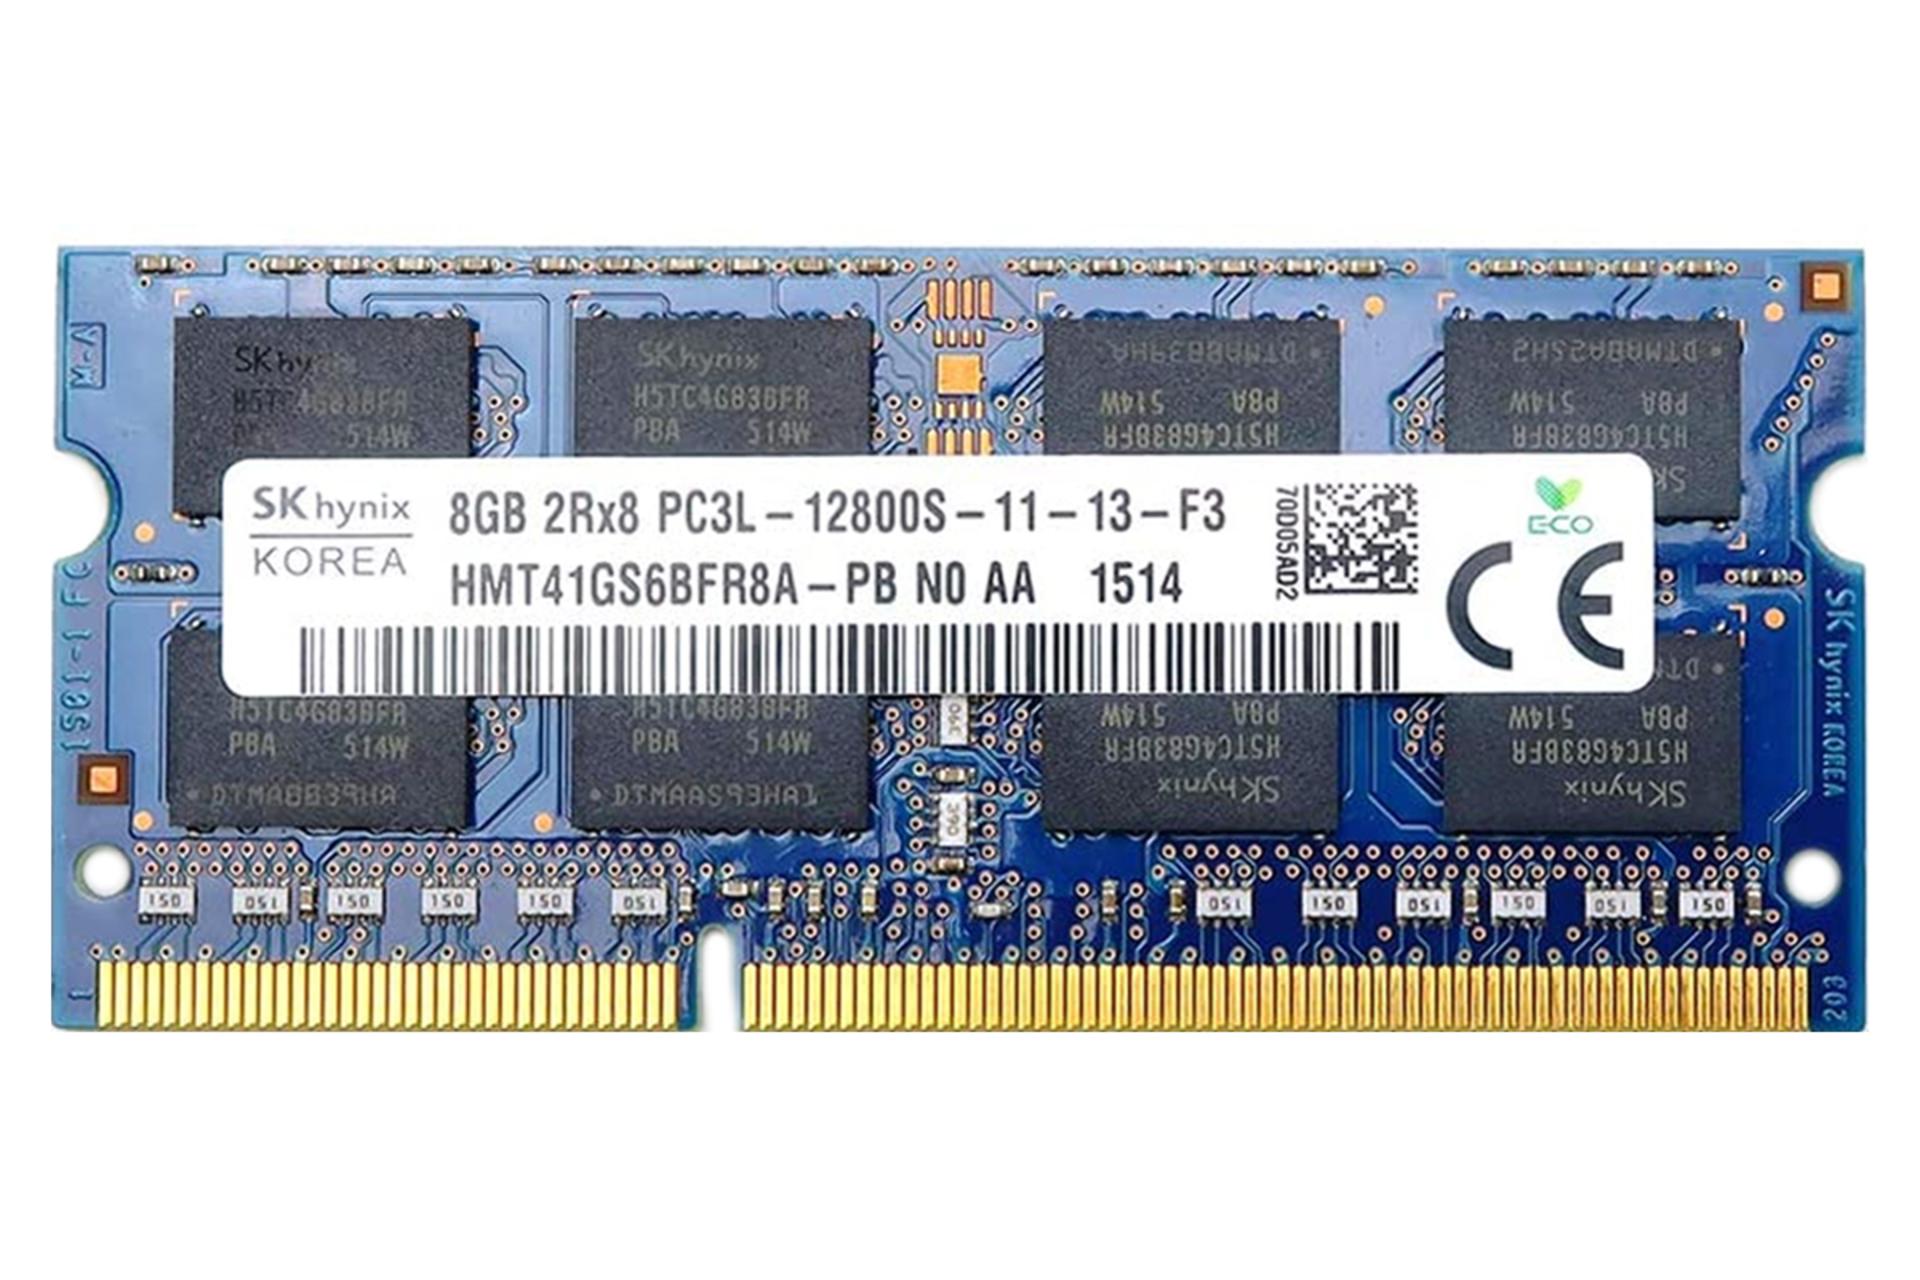 رم اس کی هاینیکس HMT41GS6BFR8A-PB ظرفیت 8 گیگابایت از نوع DDR3L-1600